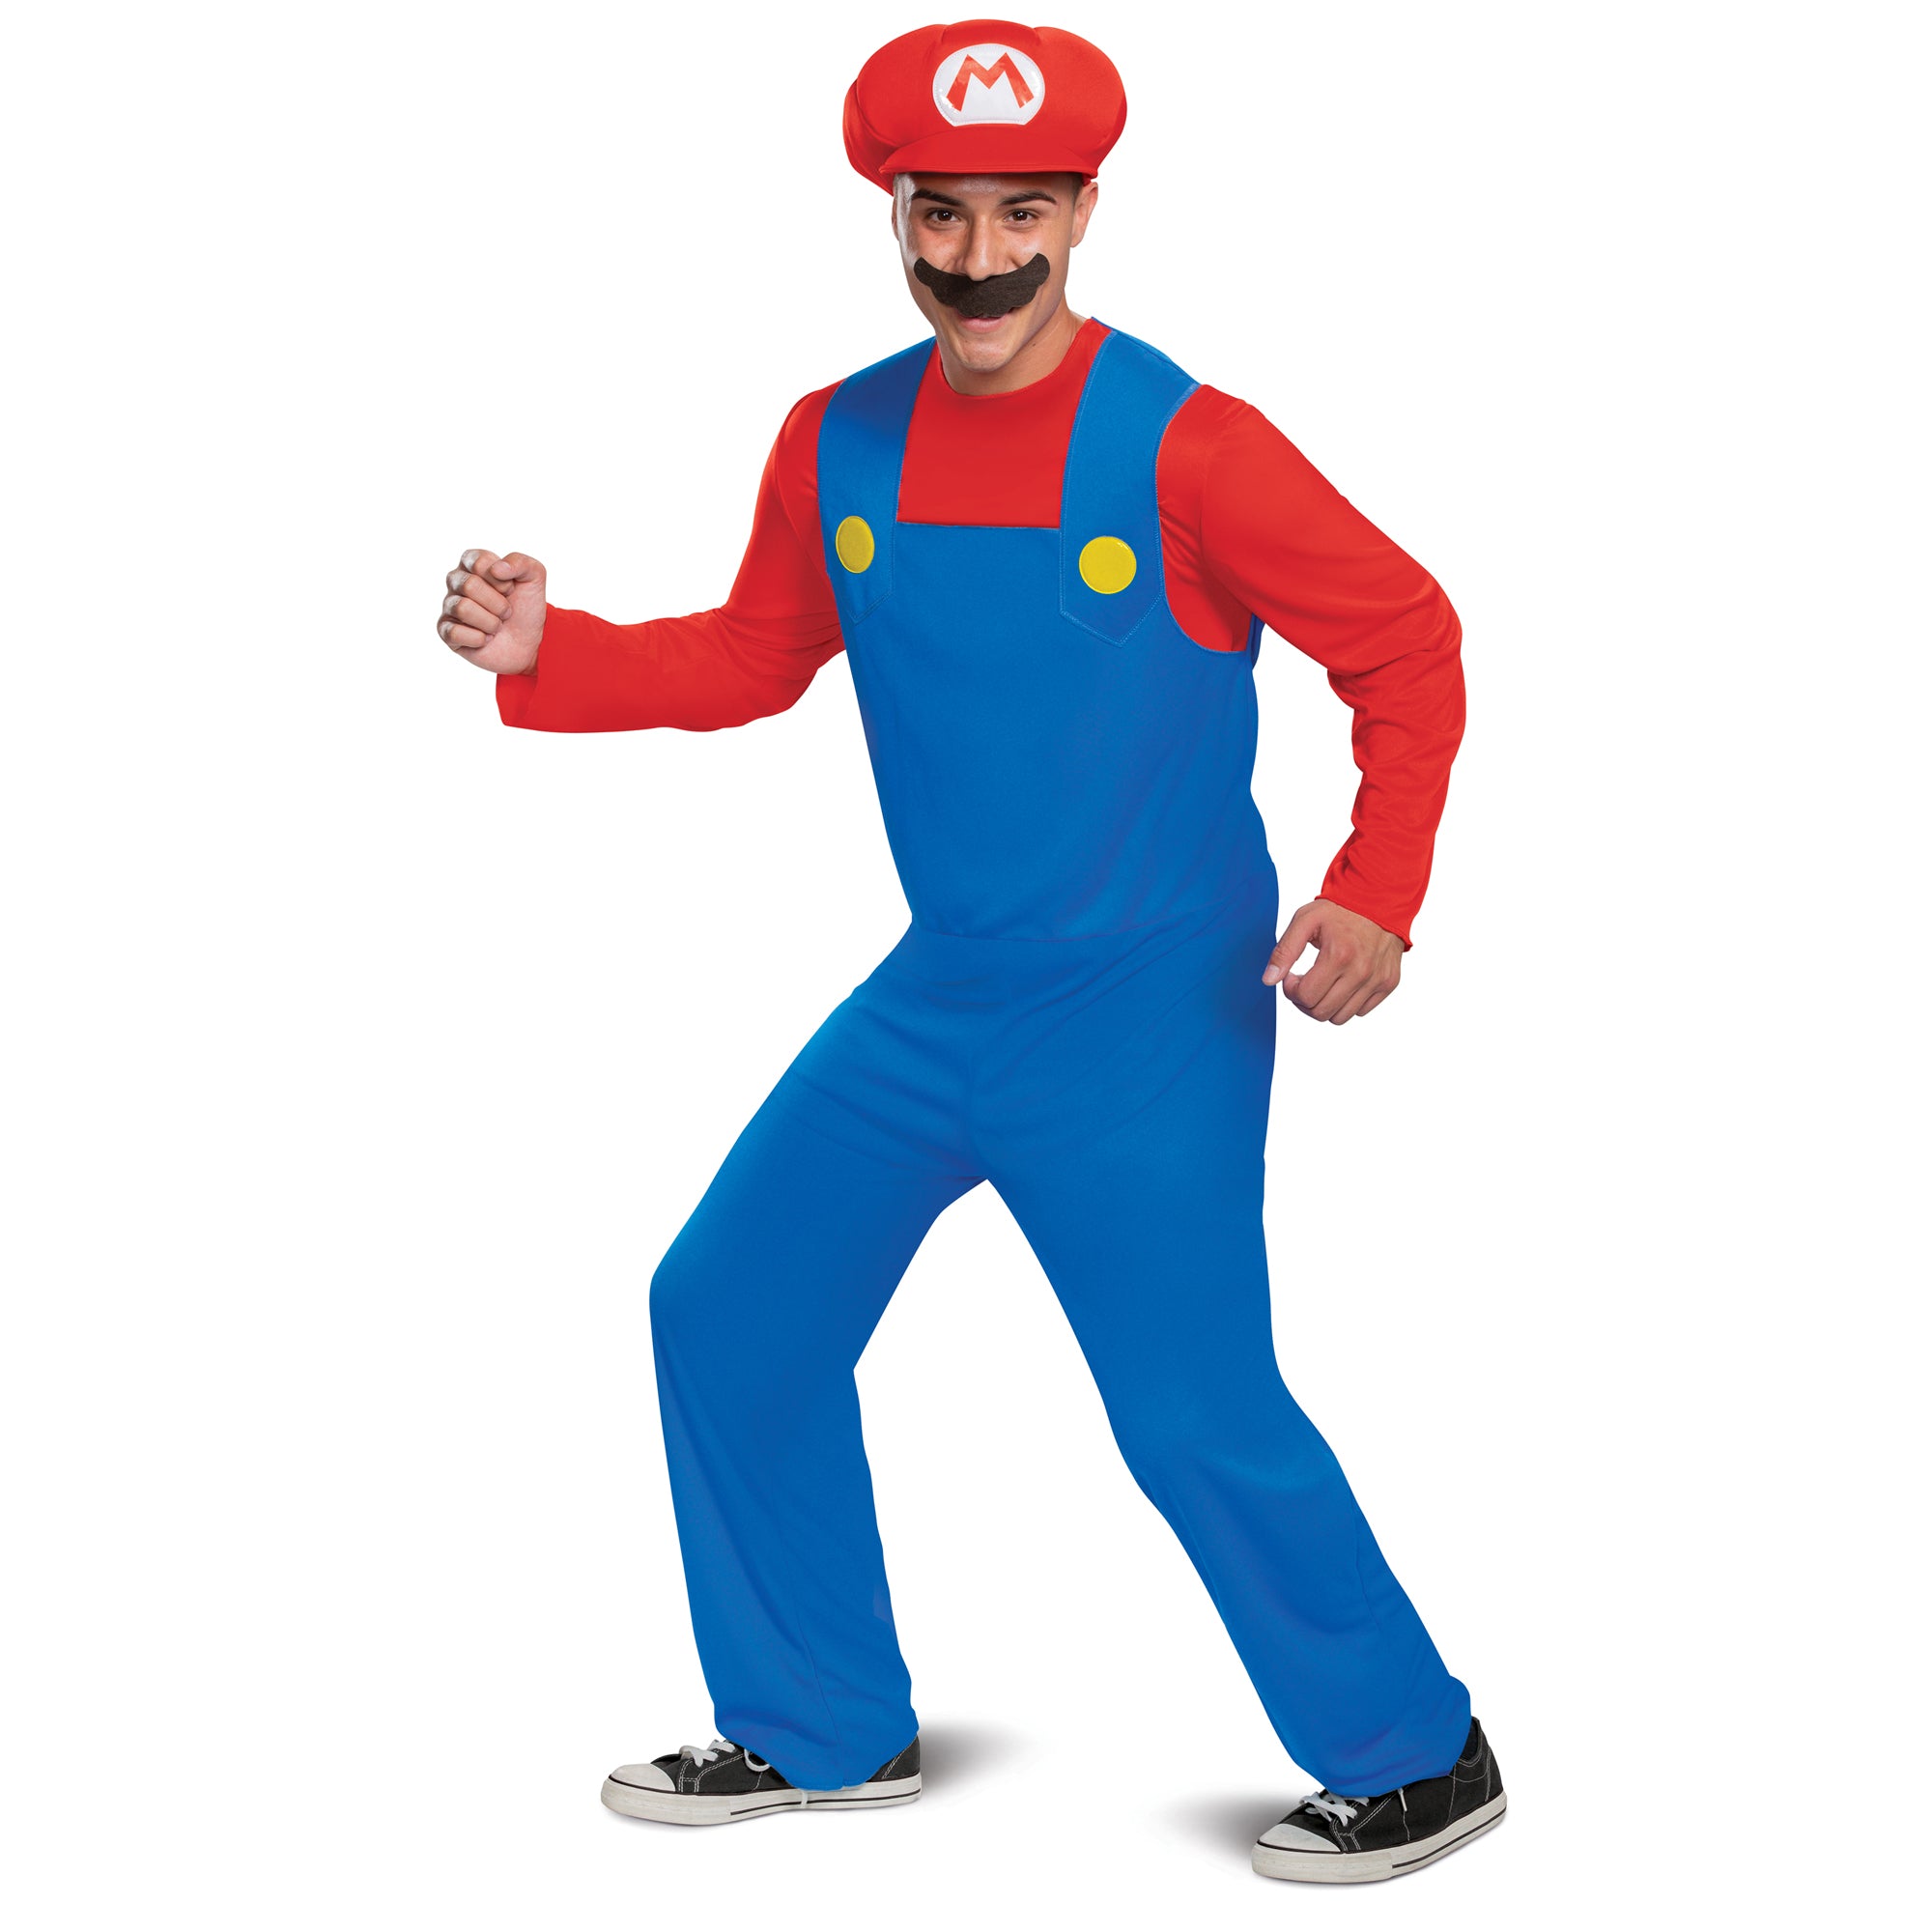 Costume de Mario pour adultes, Super Mario Bros.